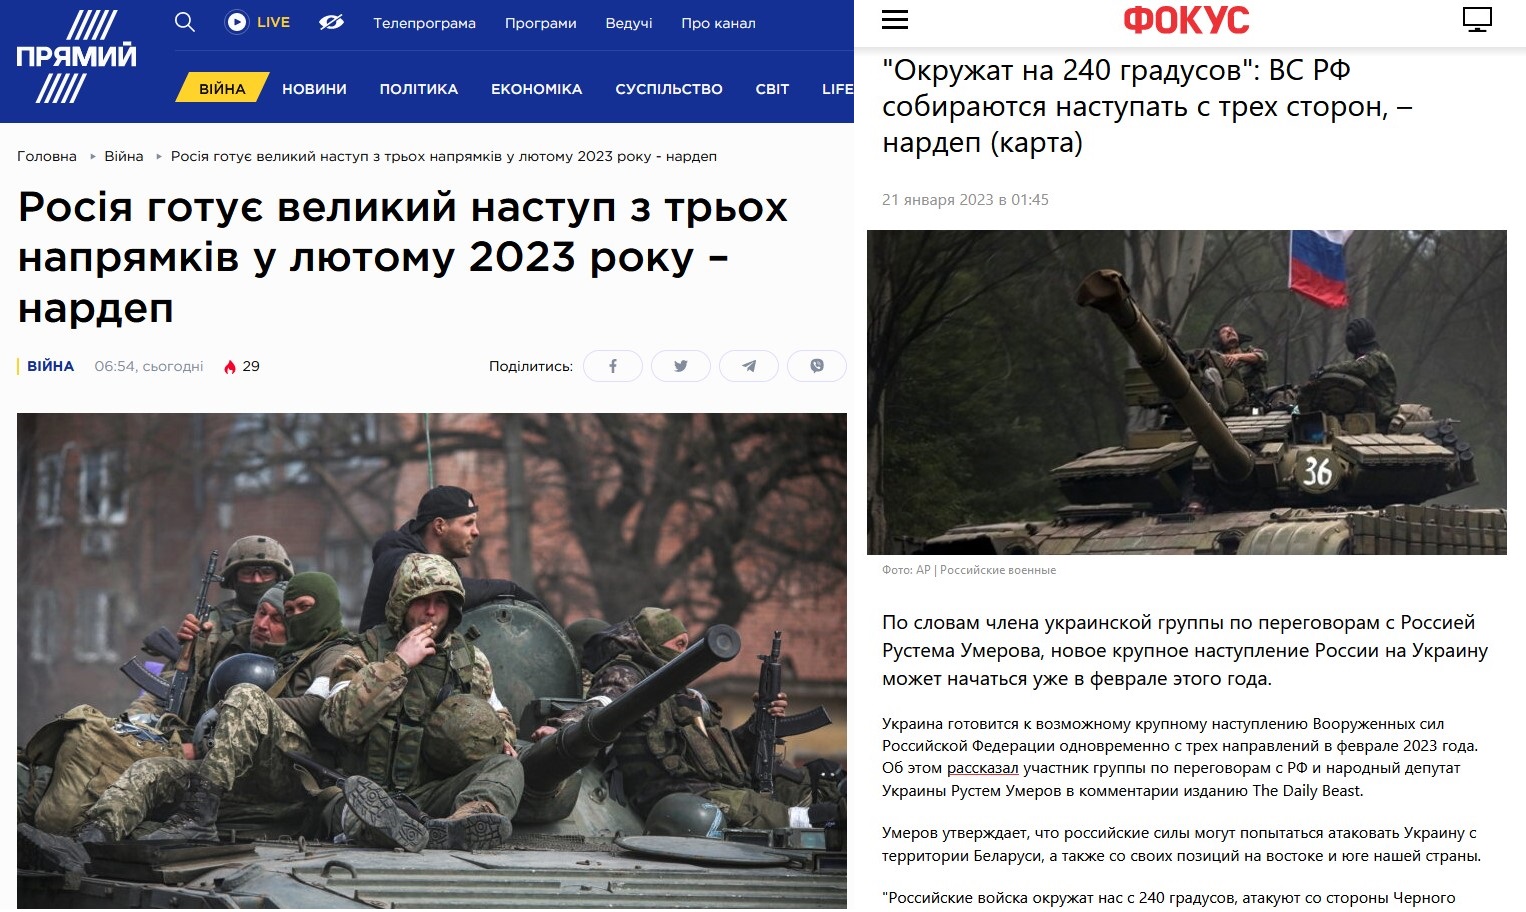 Українські ЗМІ масово поширили фейк про "наступ росії з трьох напрямків" у лютому 2023 року